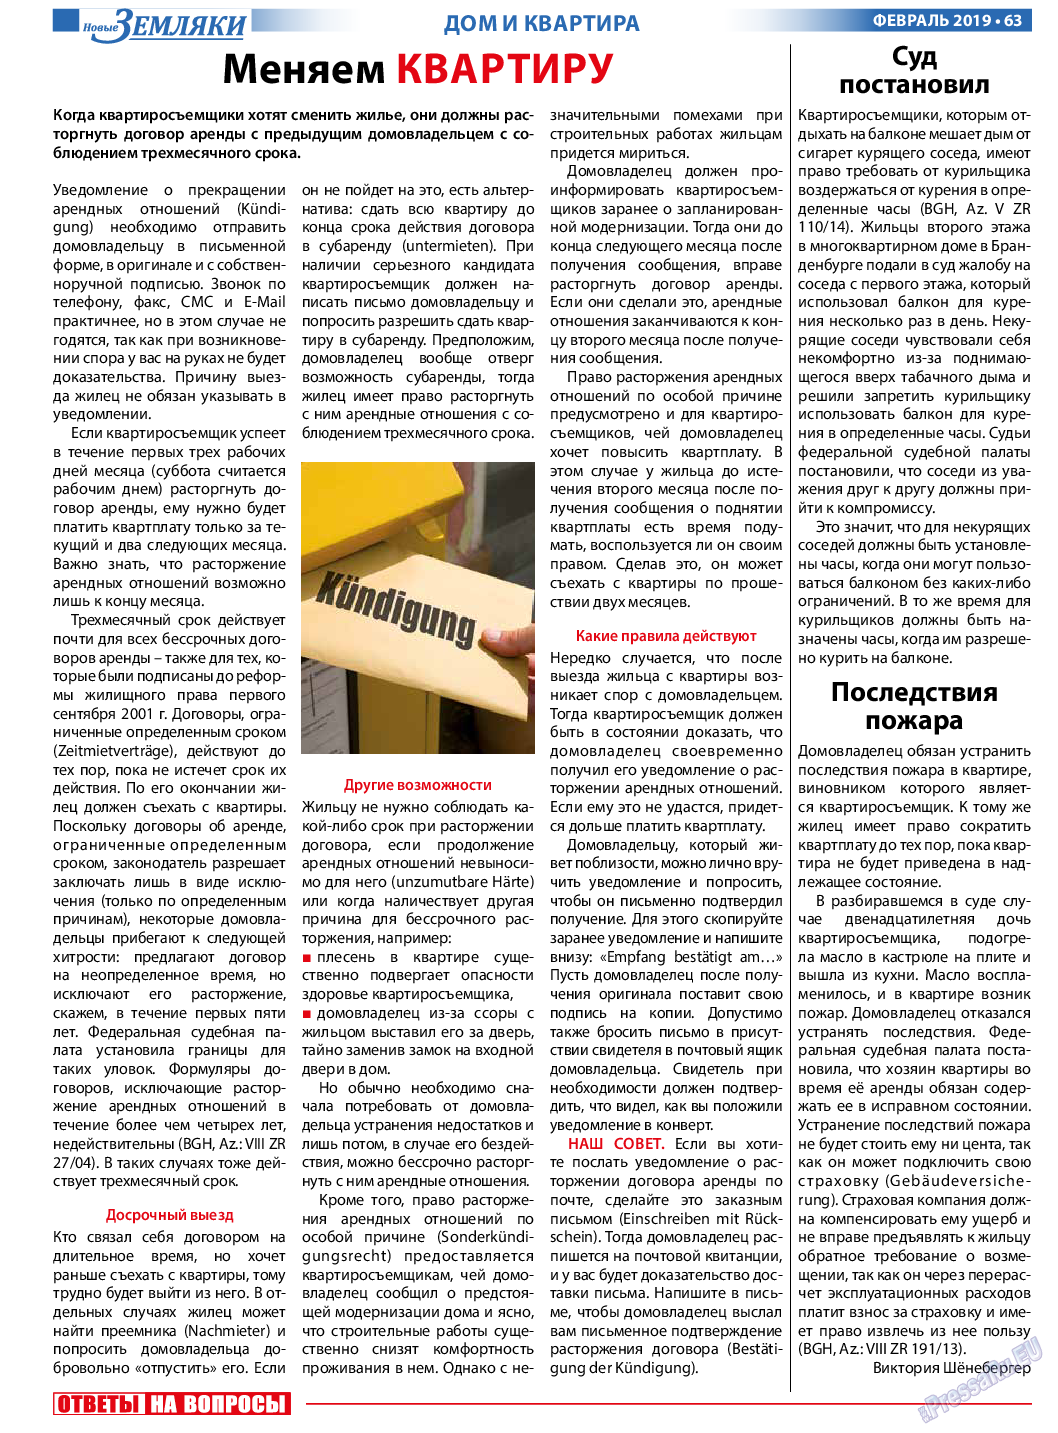 Новые Земляки, газета. 2019 №2 стр.63